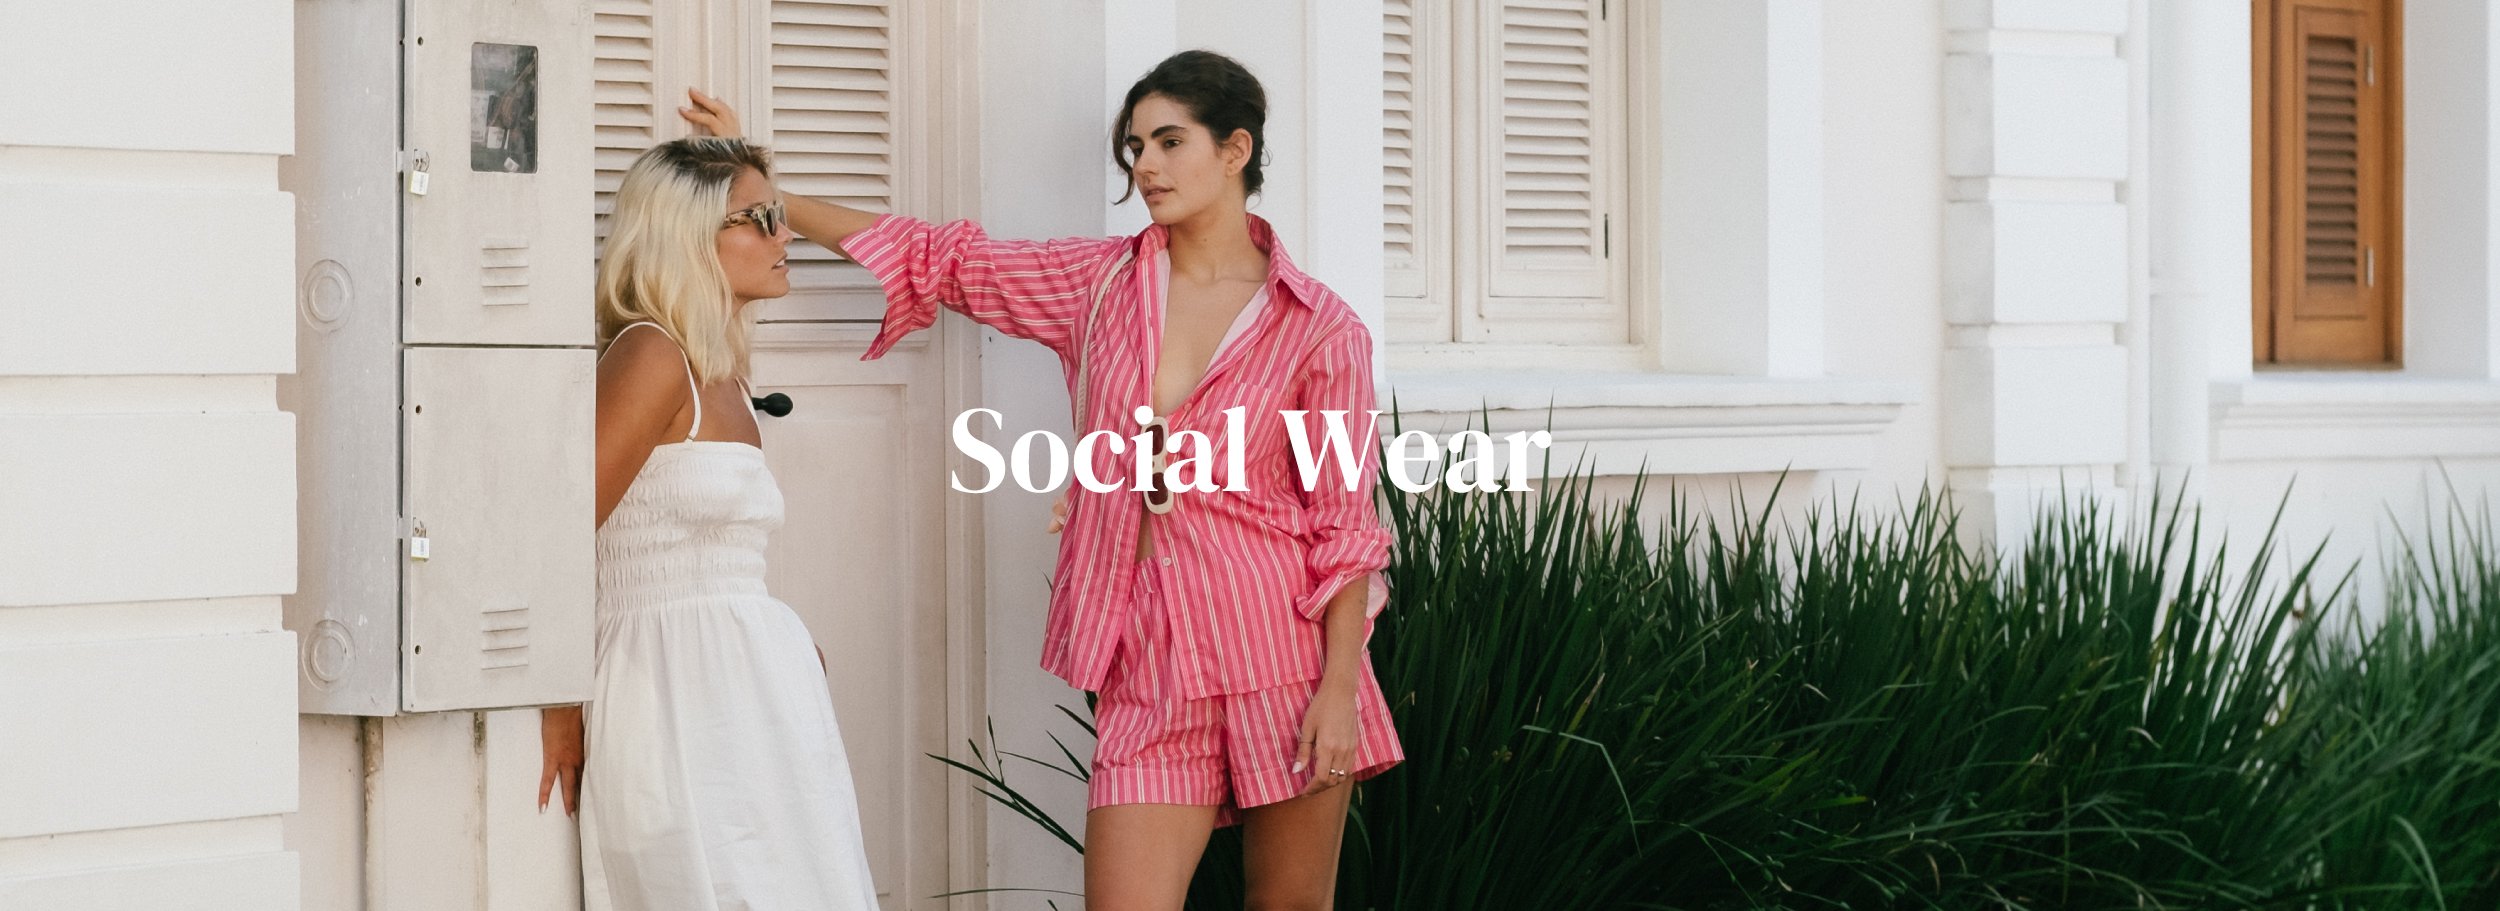 banner-site-socialwear1